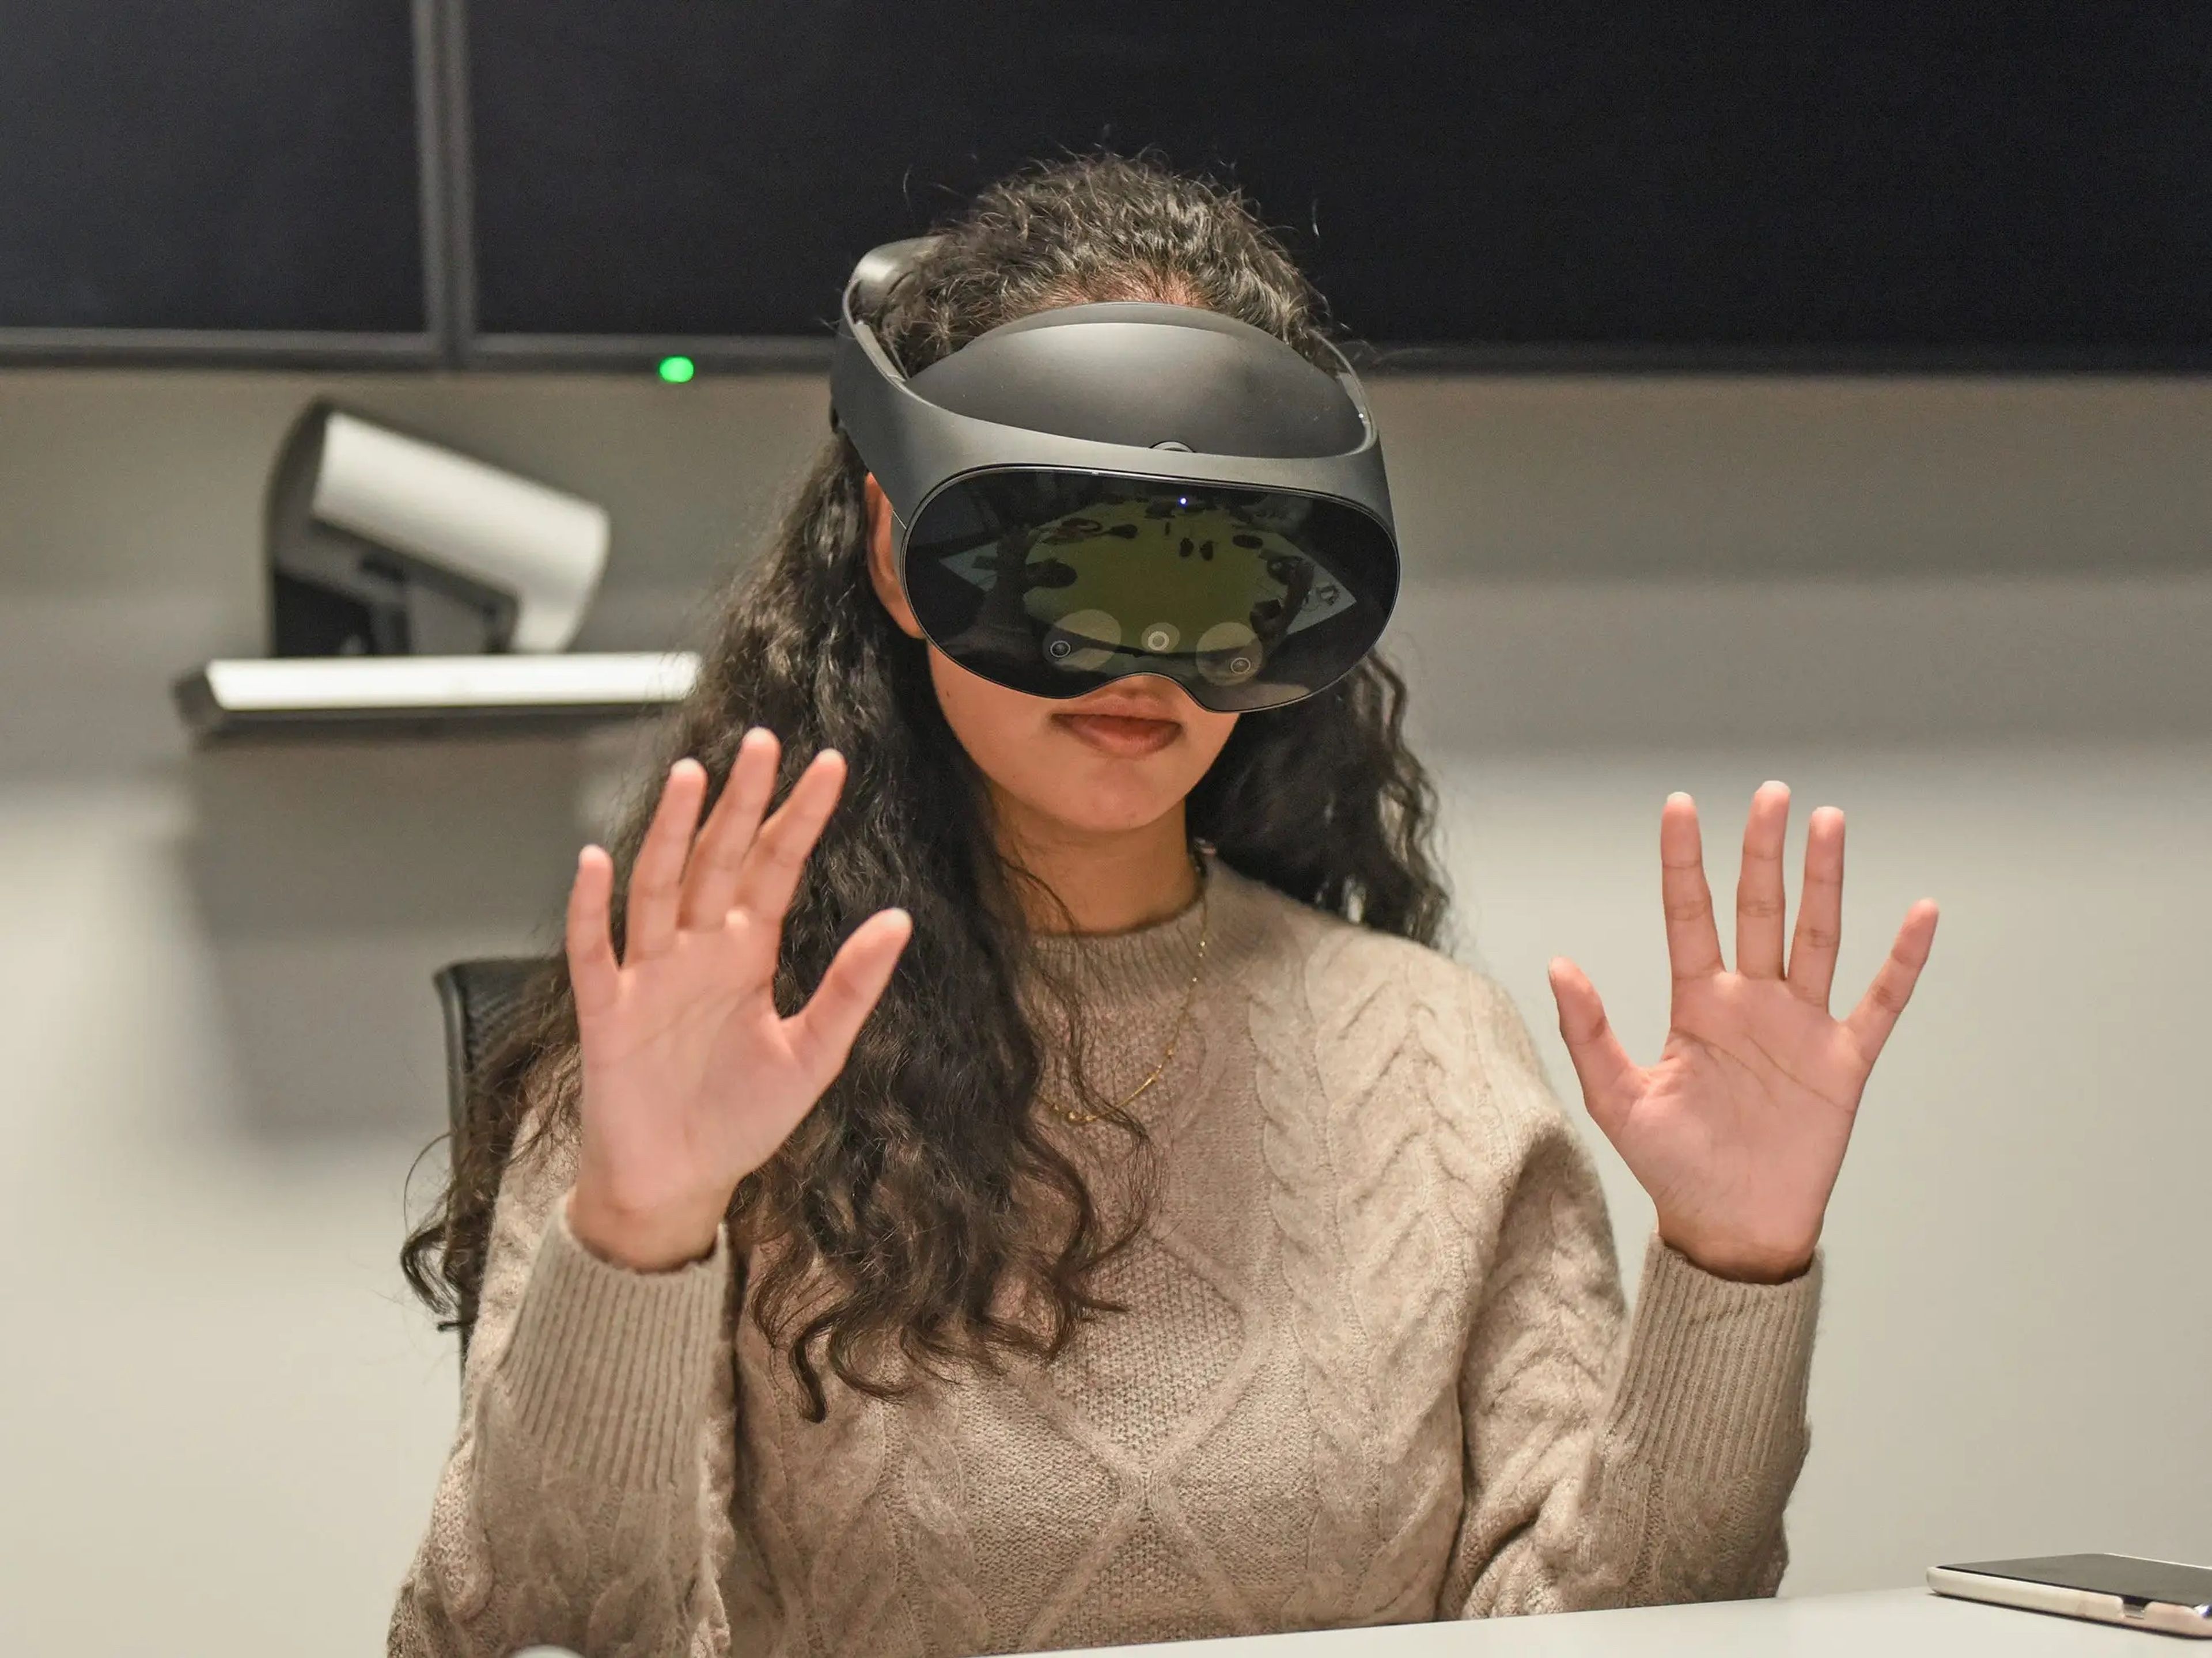 He probado el visor de realidad virtual Meta Quest Pro. 